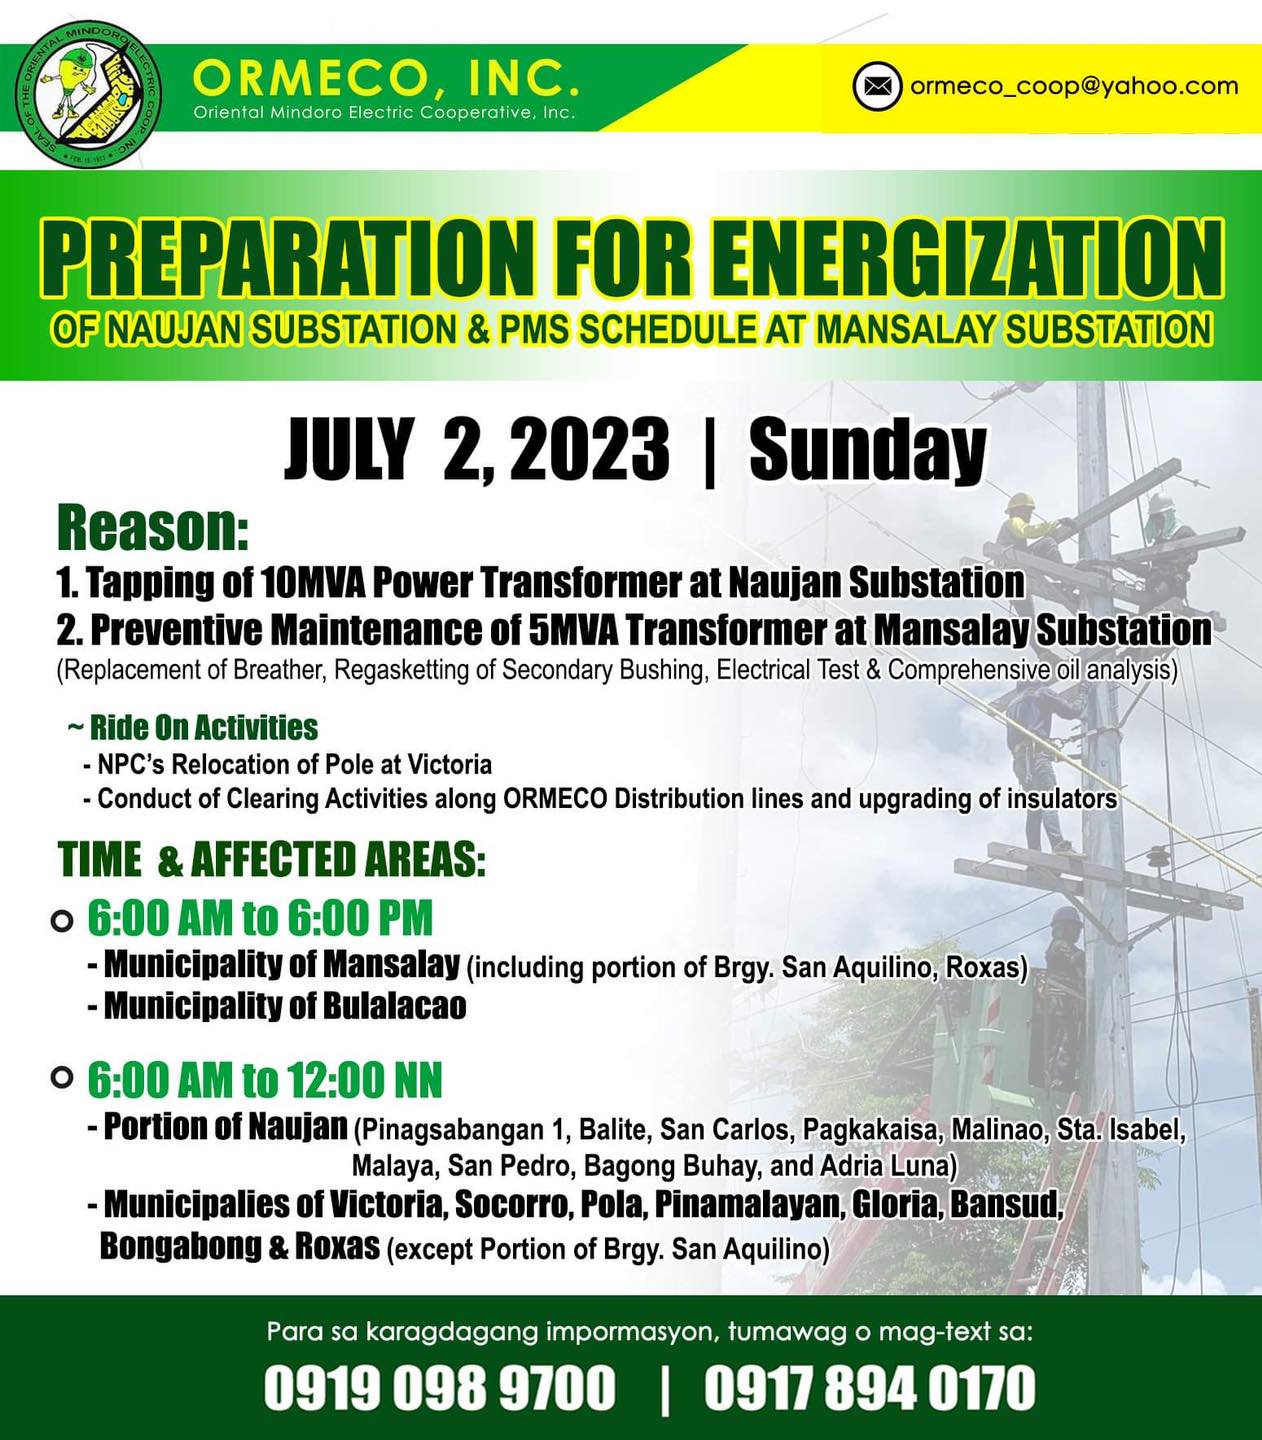 Power Interruption Scheduled July 02, 2023